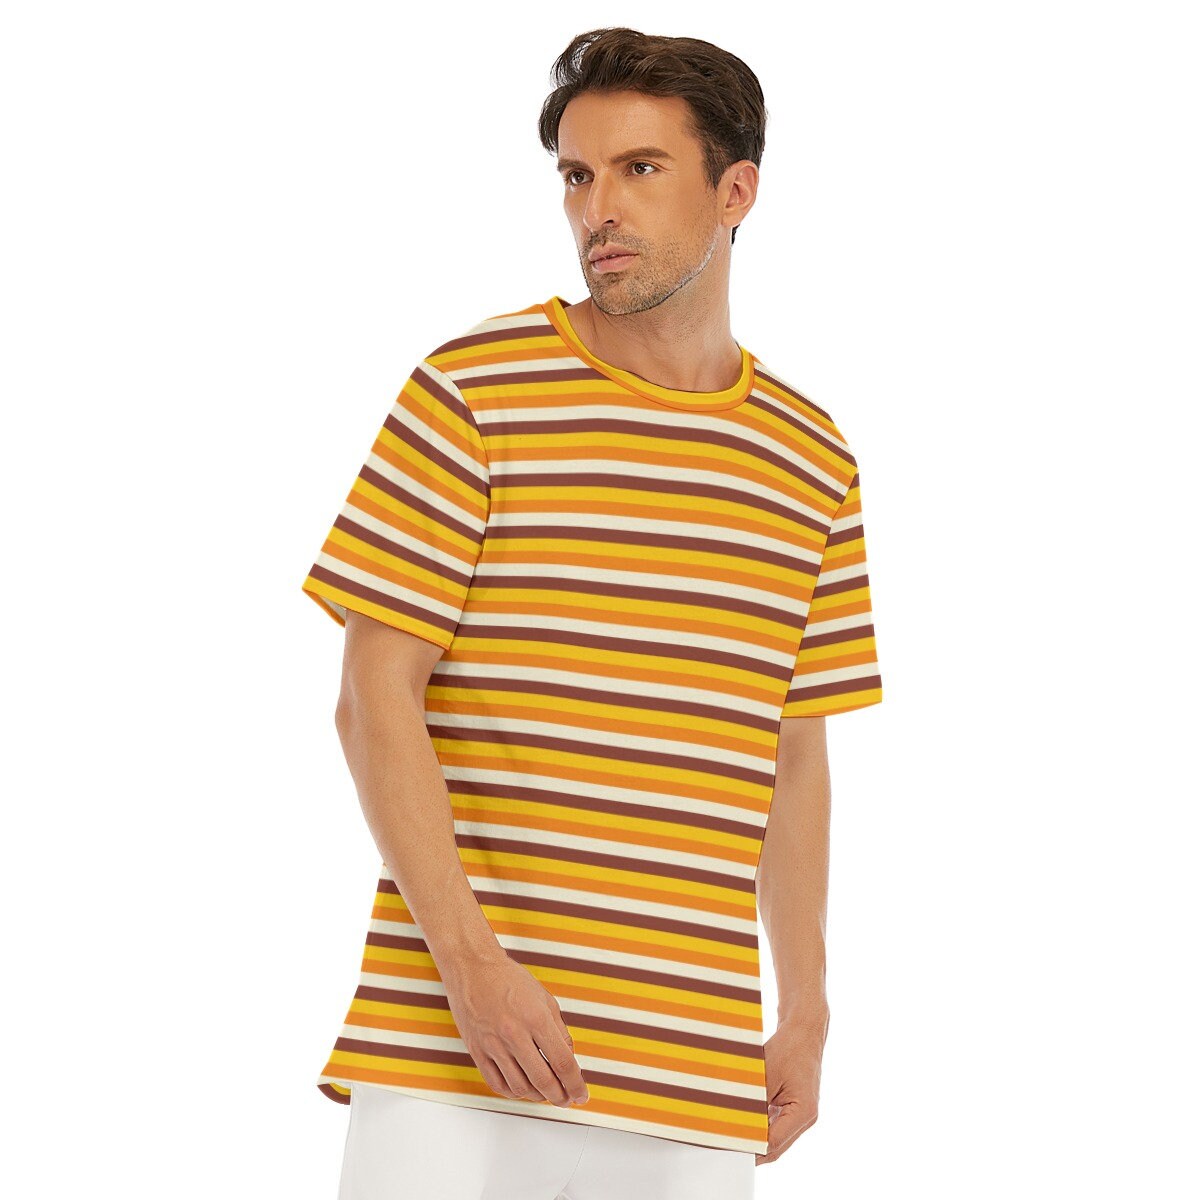 Retro T-Shirt Men, 100% Cotton T-shirt, Men&#39;s Orange Top, Men's Stripe Top, Vintage style t-shirt,70s Style T-shirt,Stripe T-shirt Men